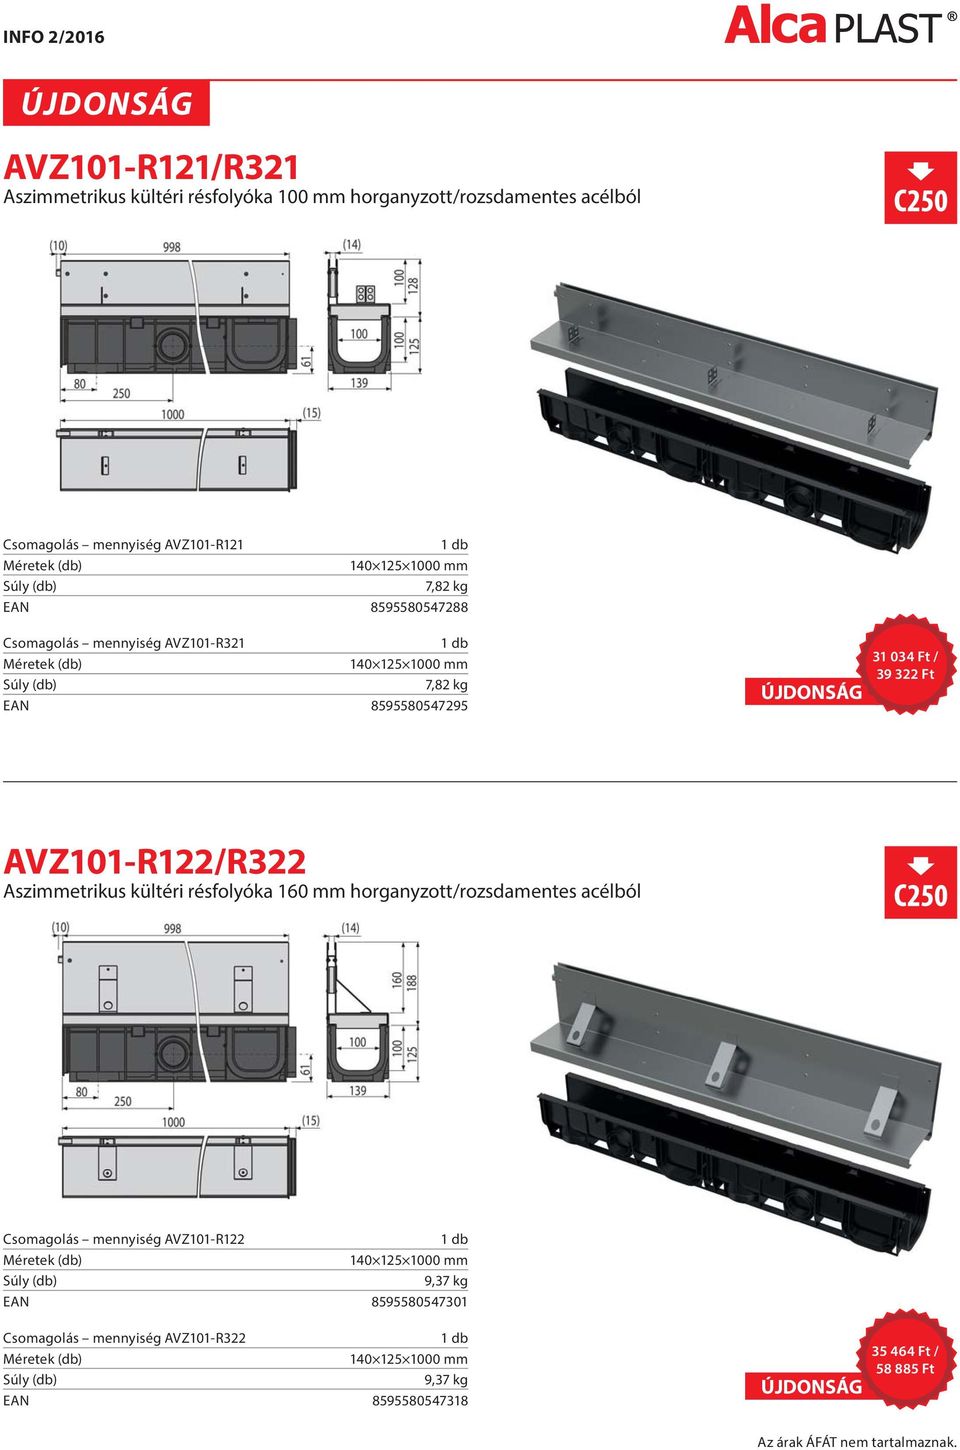 AVZ101-R122/R322 Aszimmetrikus kültéri résfolyóka 160 mm horganyzott/rozsdamentes acélból Csomagolás mennyiség AVZ101-R122 140 125 1000 mm